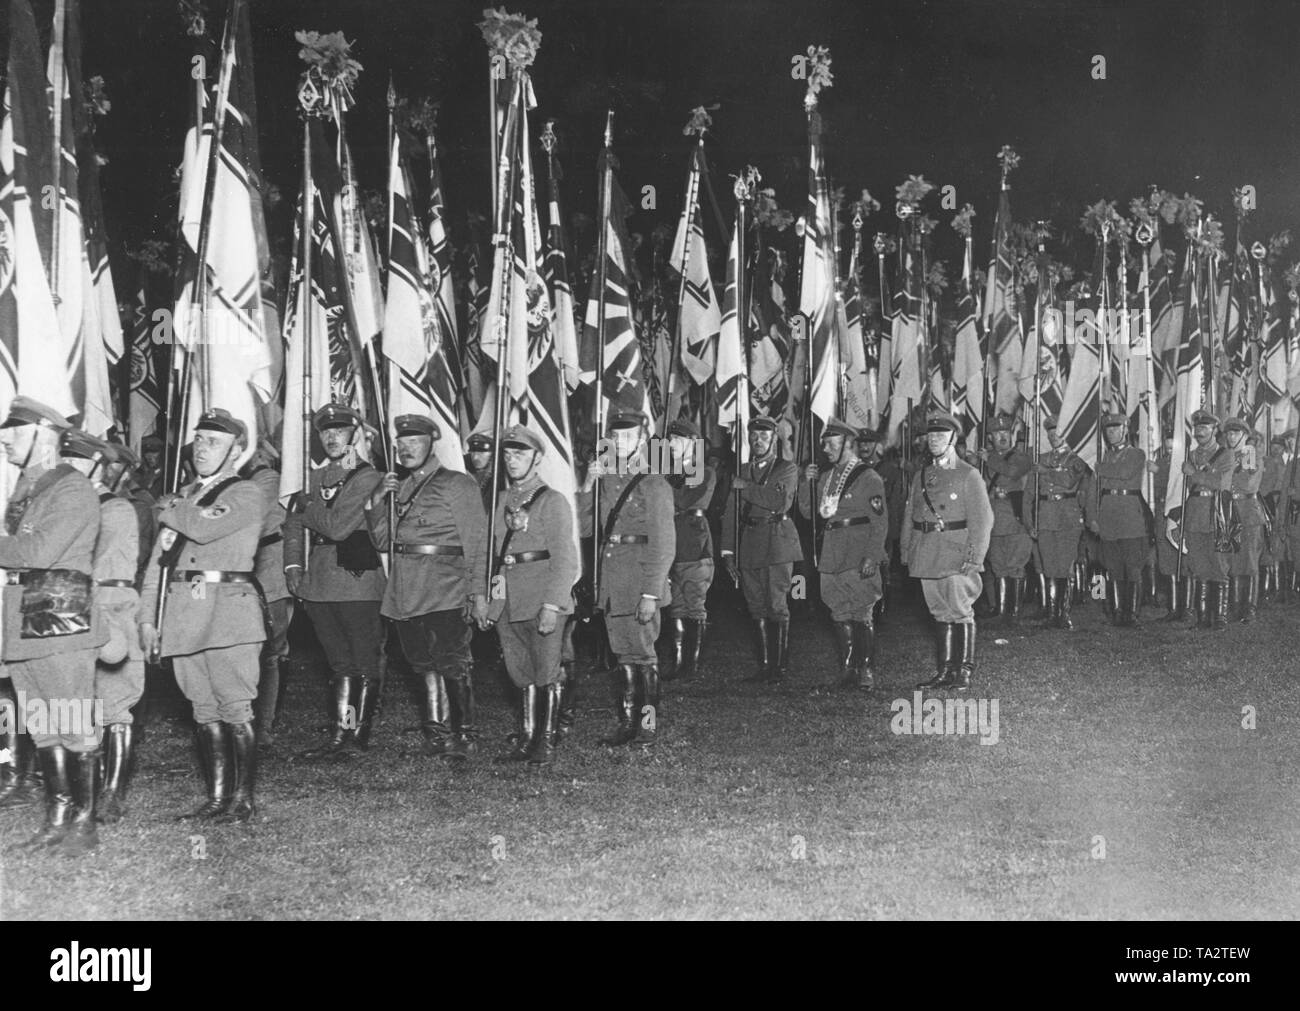 Im Rahmen des Festivals, die Fahnen waren auch gefeiert mit einem Marsch, der Imperialen Flagge Reichskriegsflagge (Krieg) besonders beliebt war unter den Mitgliedern der Stahlhelm. Stockfoto